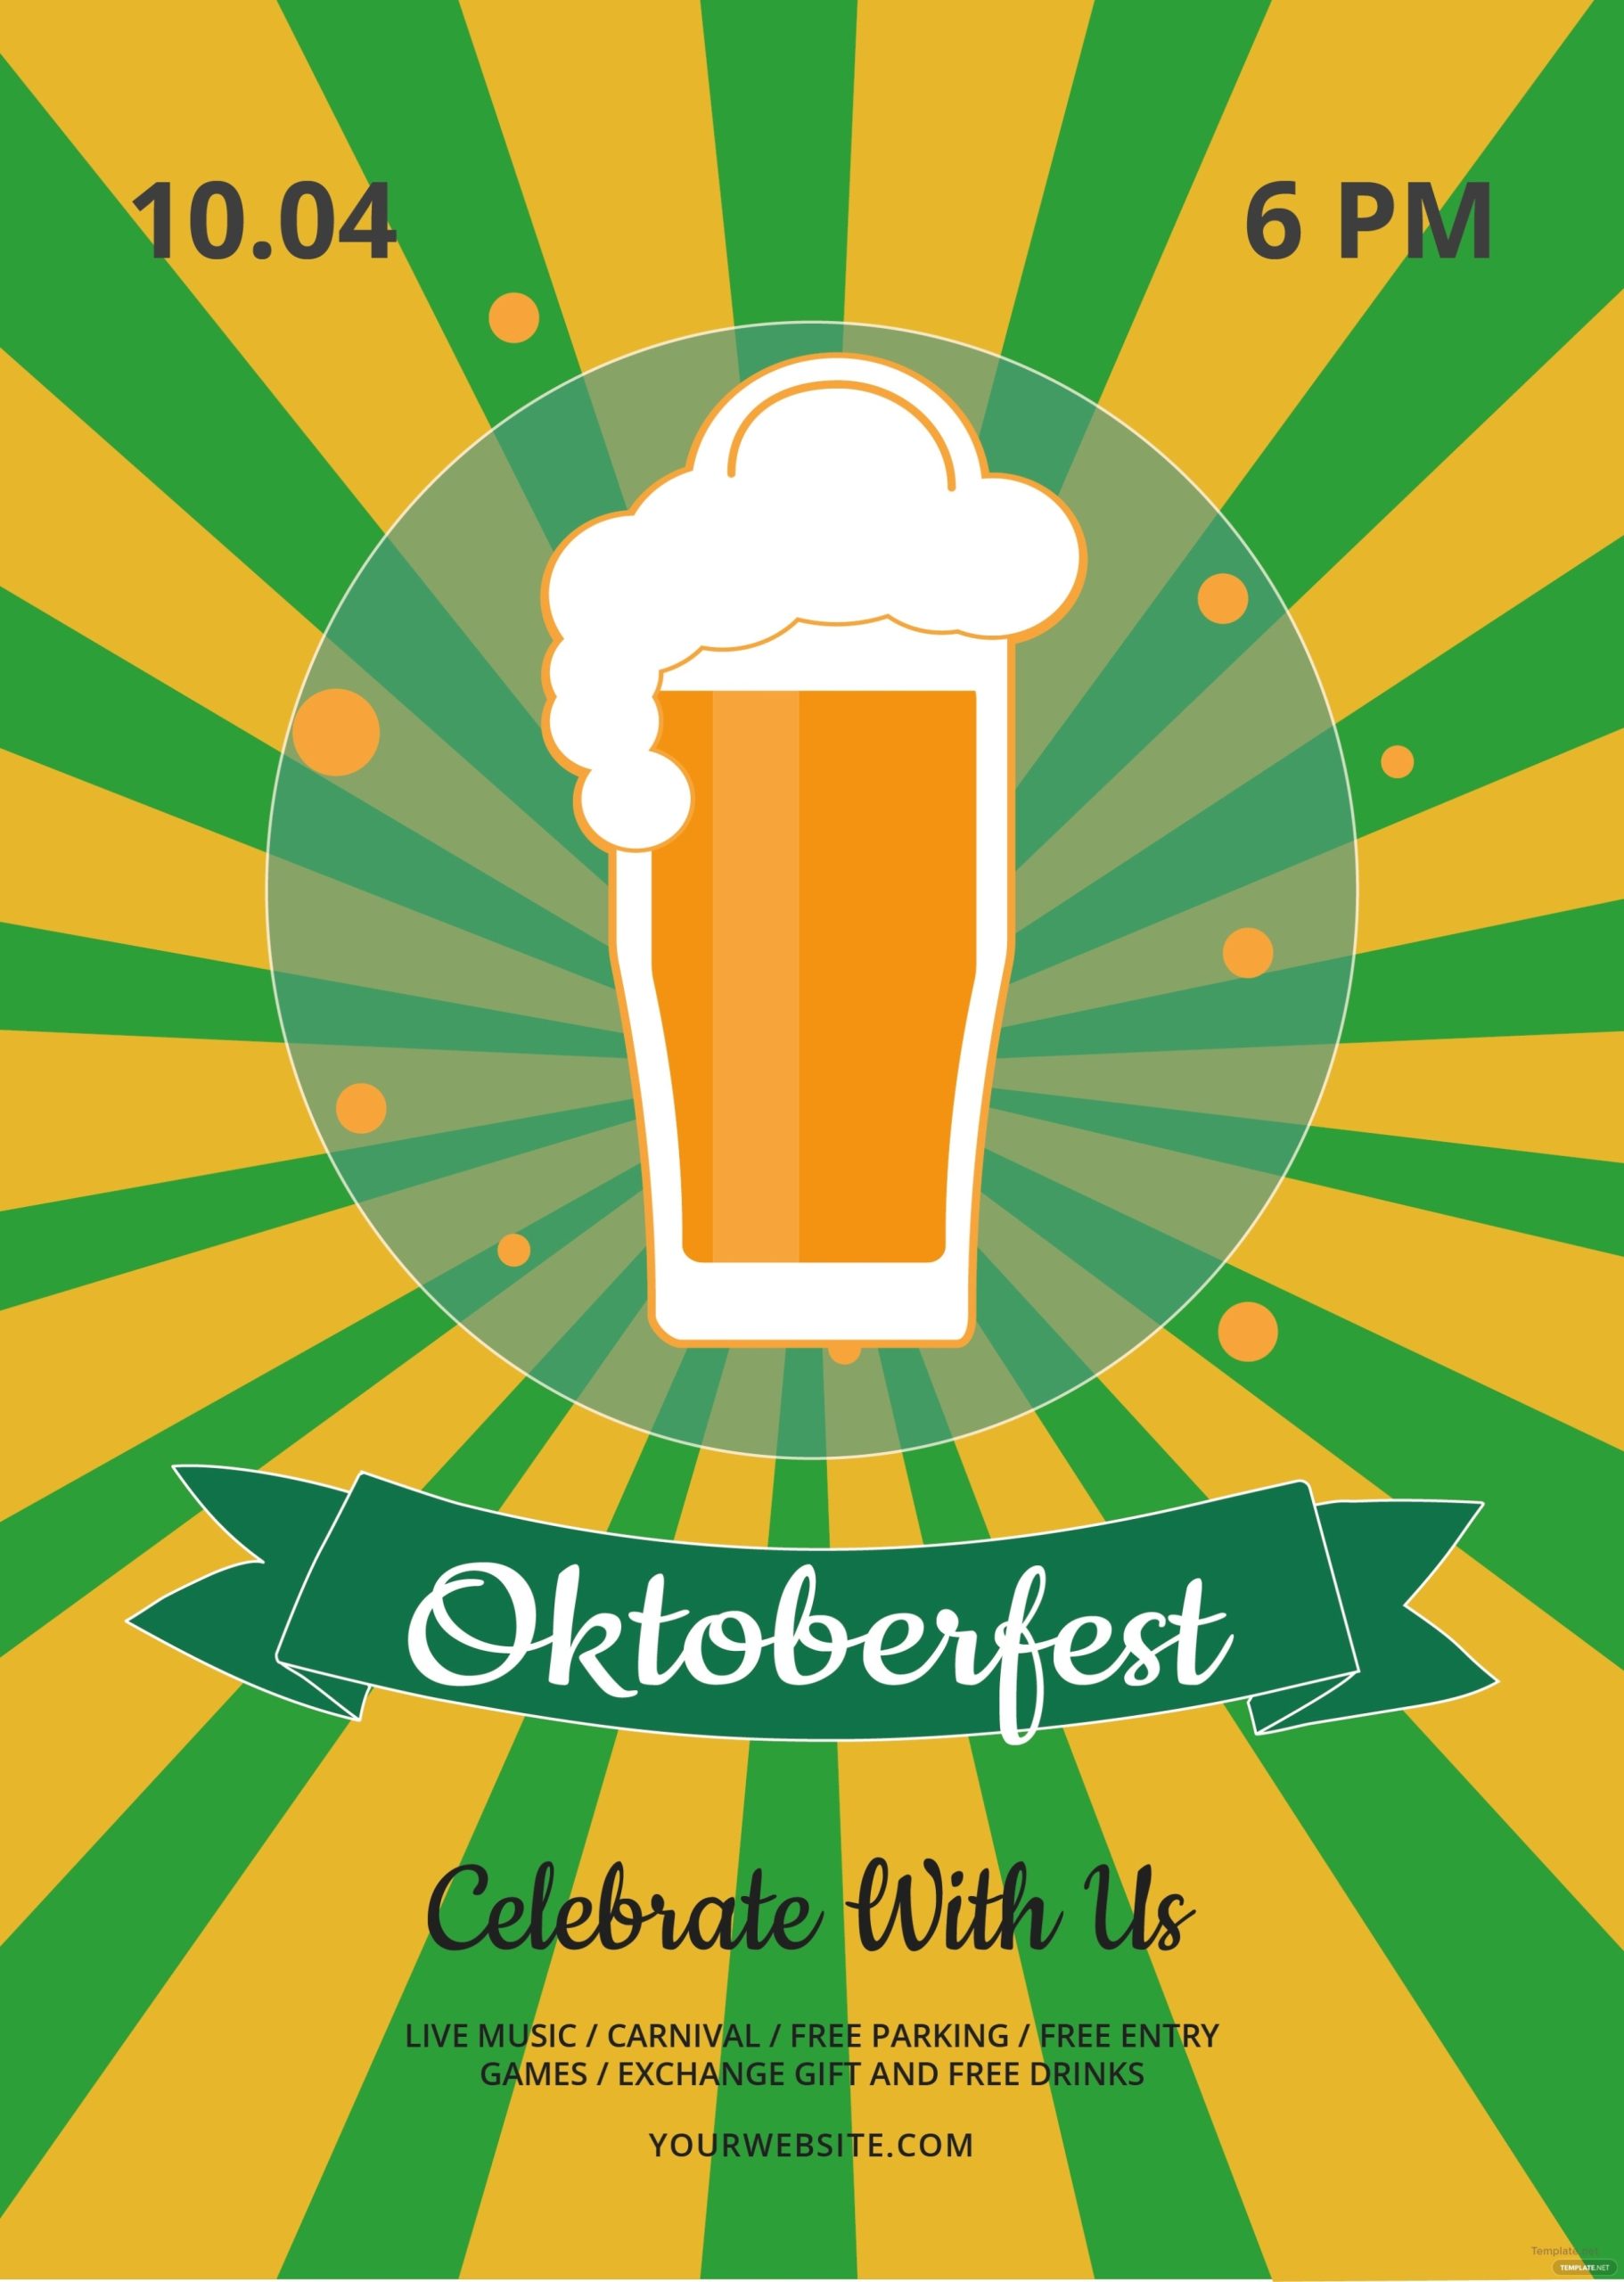 Free Oktoberfest Flyer Template In Adobe Illustrator | Template Inside Free Flyer Template Illustrator